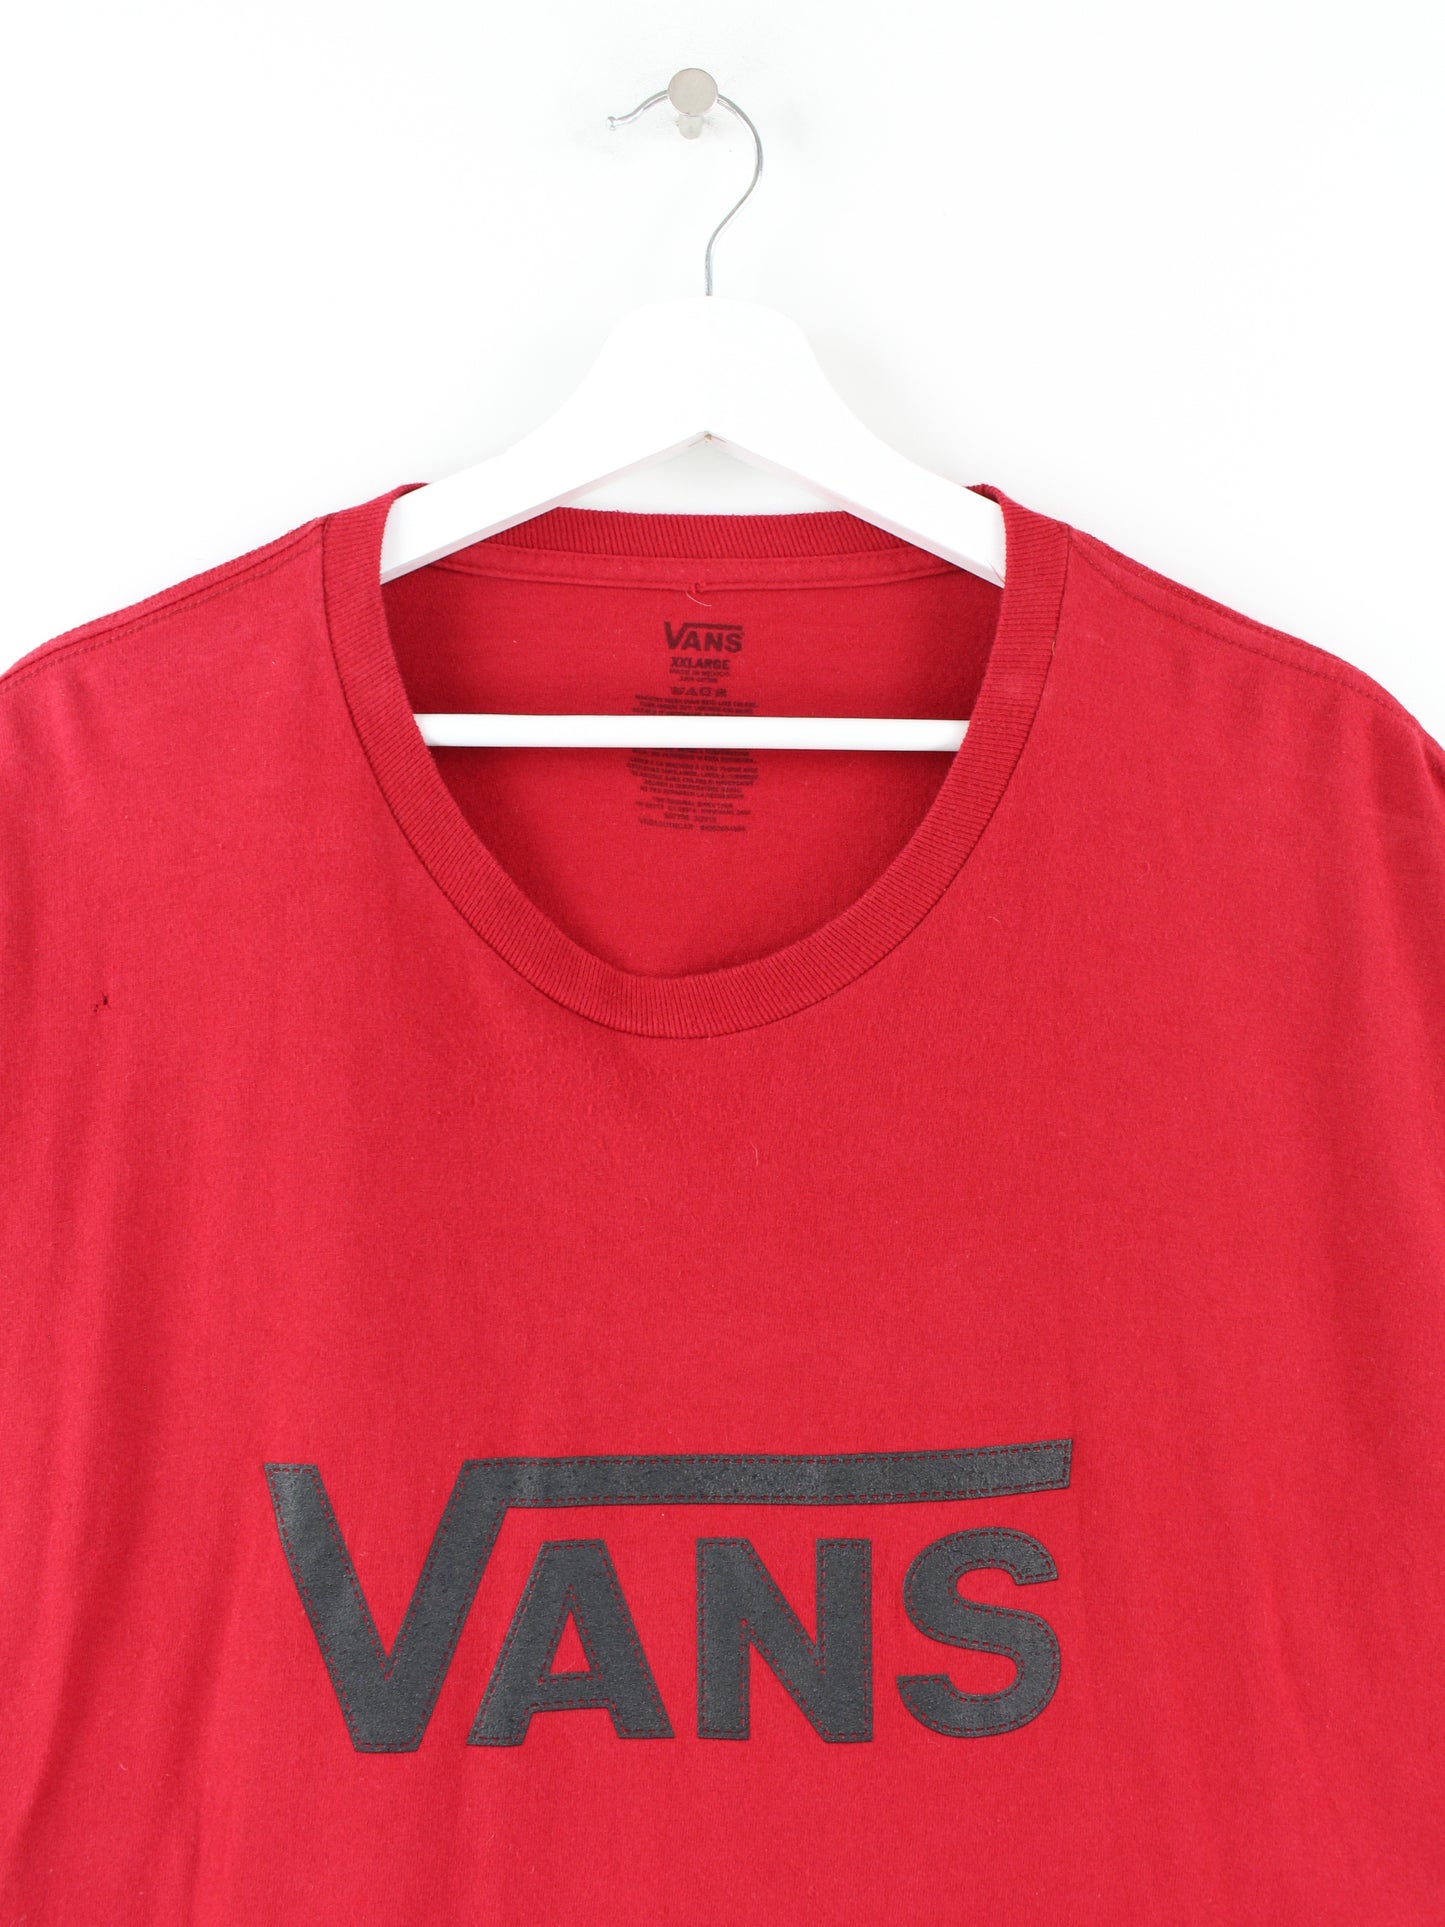 Vans Print T-Shirt Rot XXL